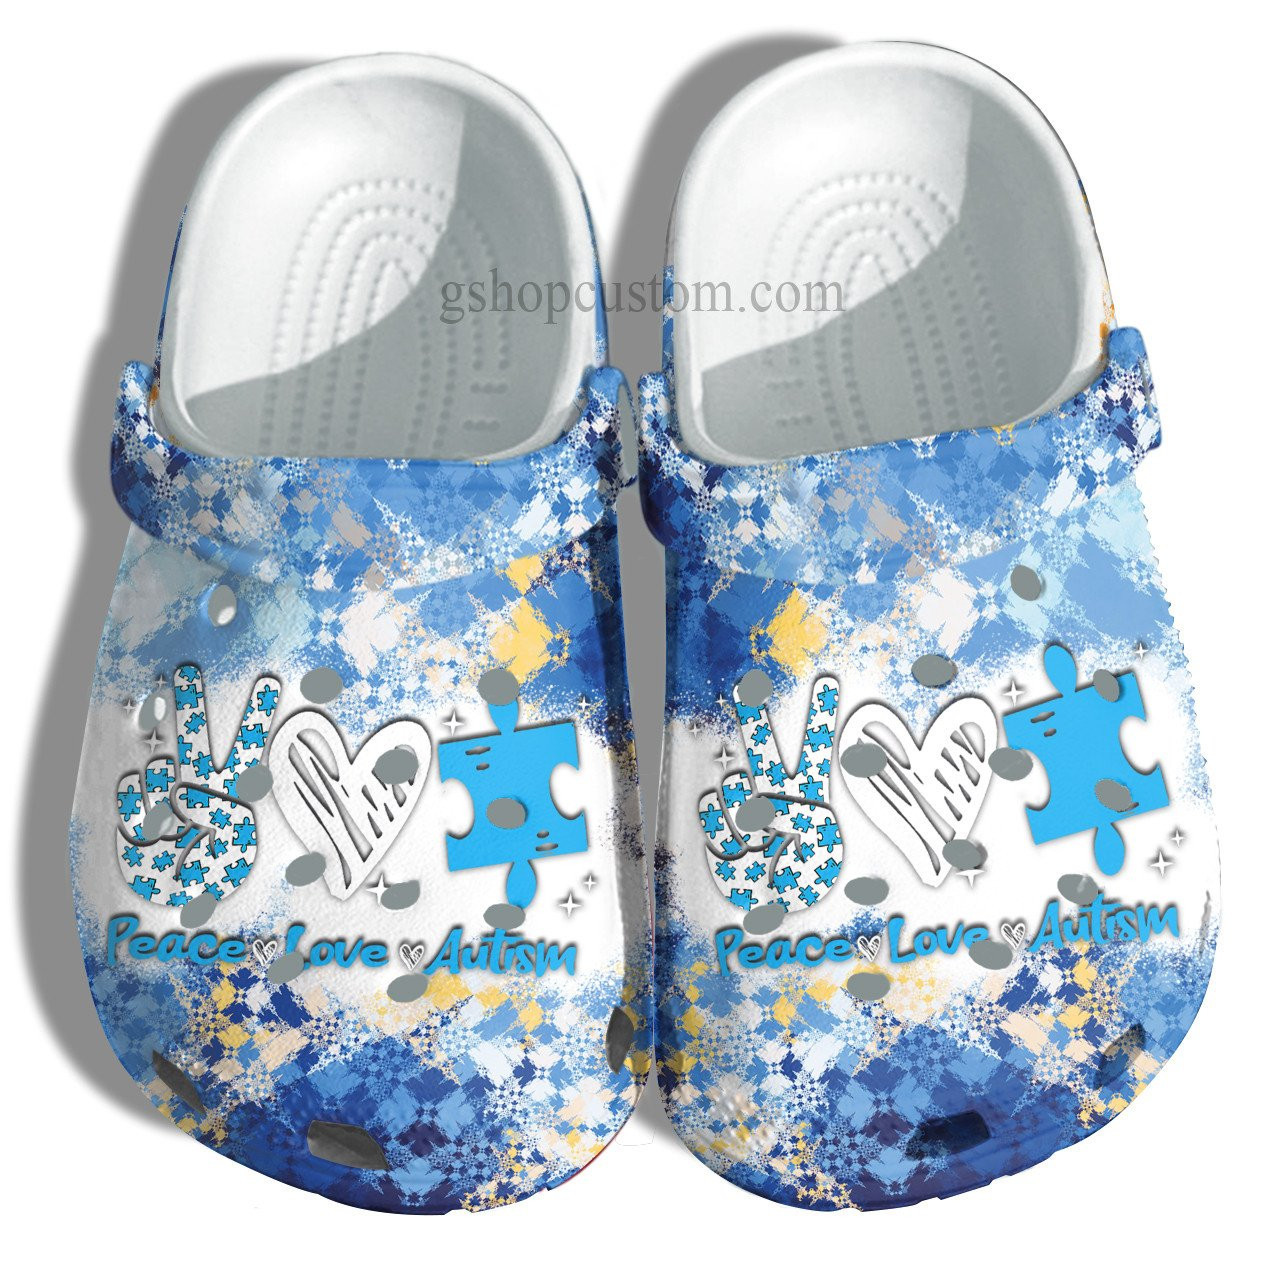 April Wear Blue Crocs Shoes - Peace Love Autism Awareness Crocs Shoes Croc Clogs Gifts Men Women